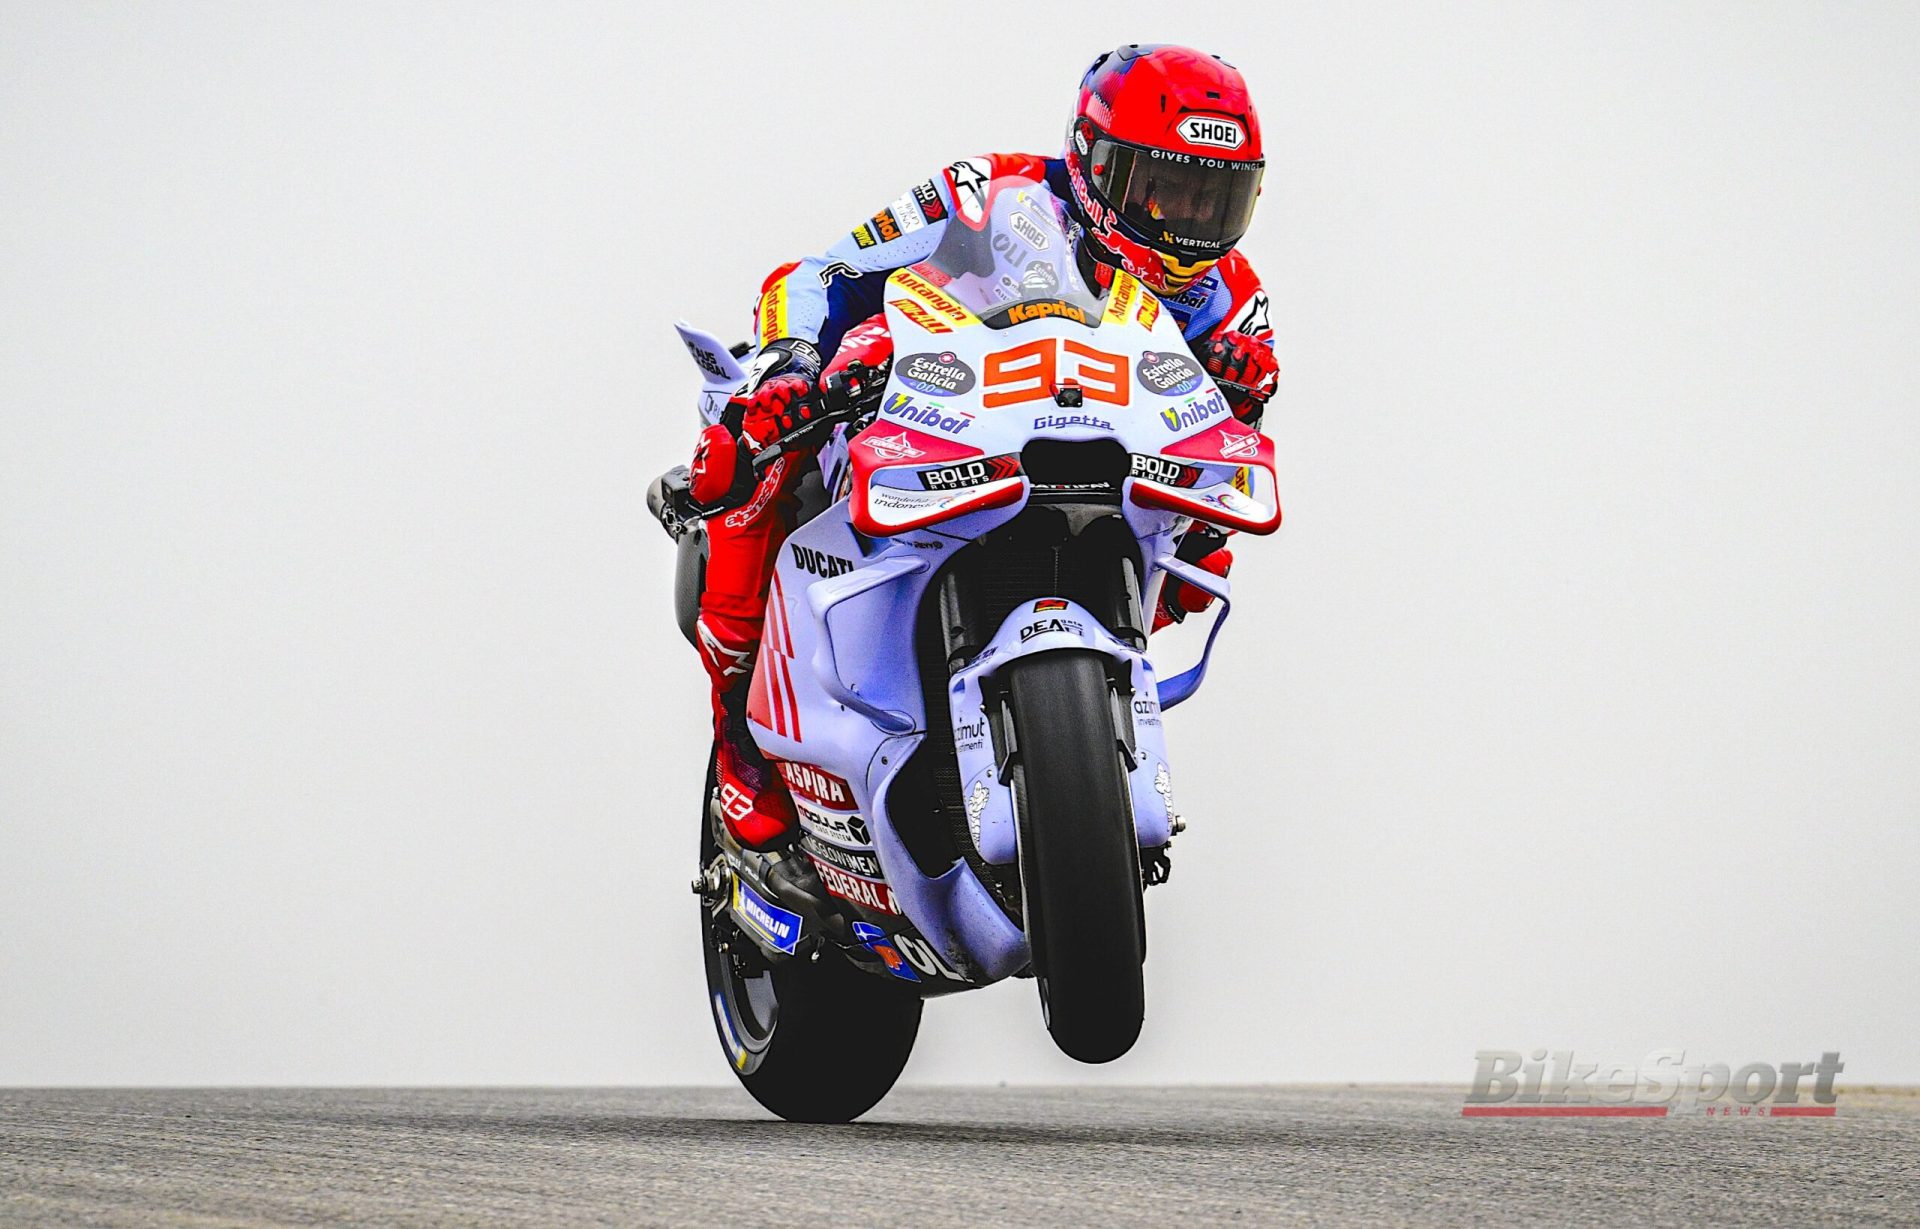 Marquez Dominates Portimao Practice while Bagnaia Faces Challenges: A MotoGP Showdown Unfolds